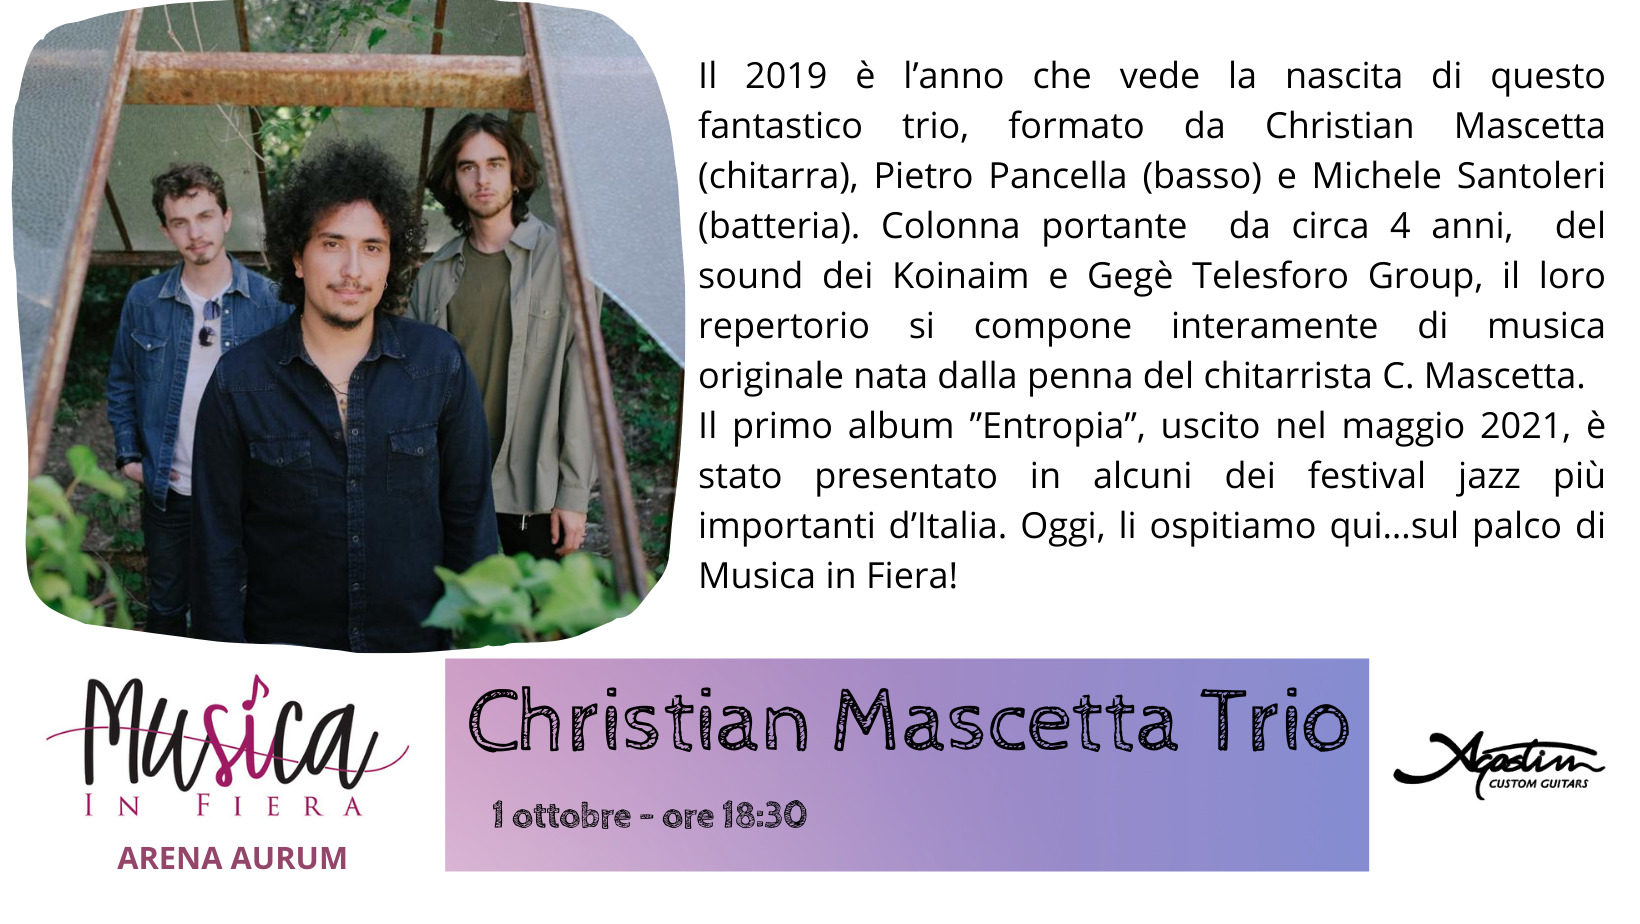 Cristian Mascetta Trio